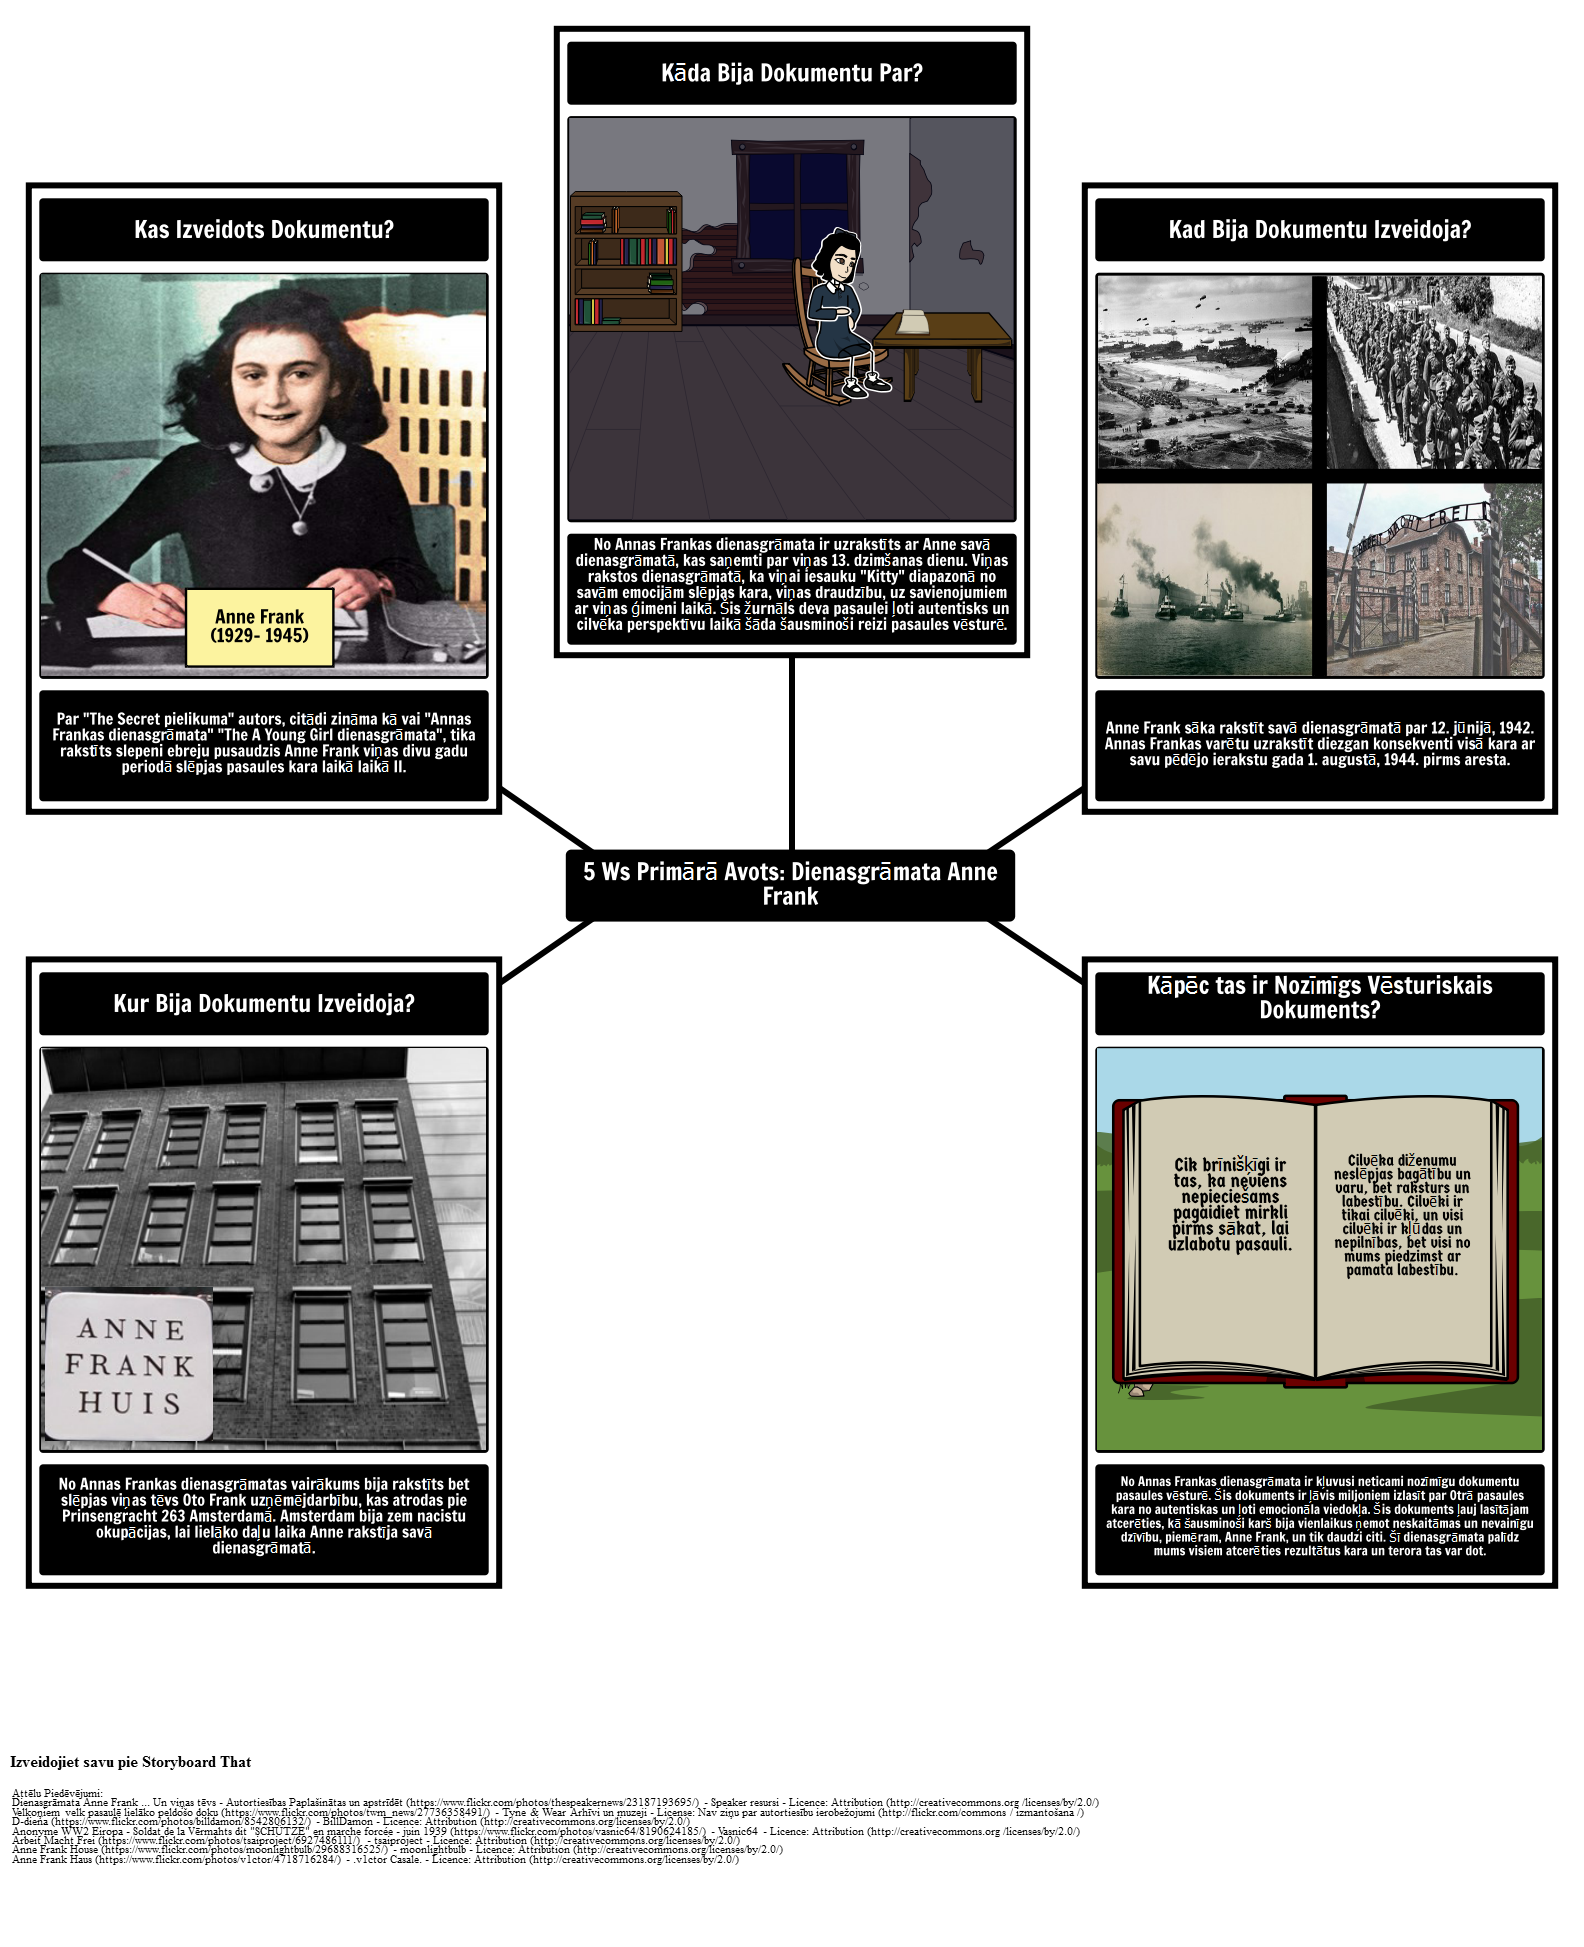 Primārā Avots 5Ws: No Anne Frank dienasgrāmata